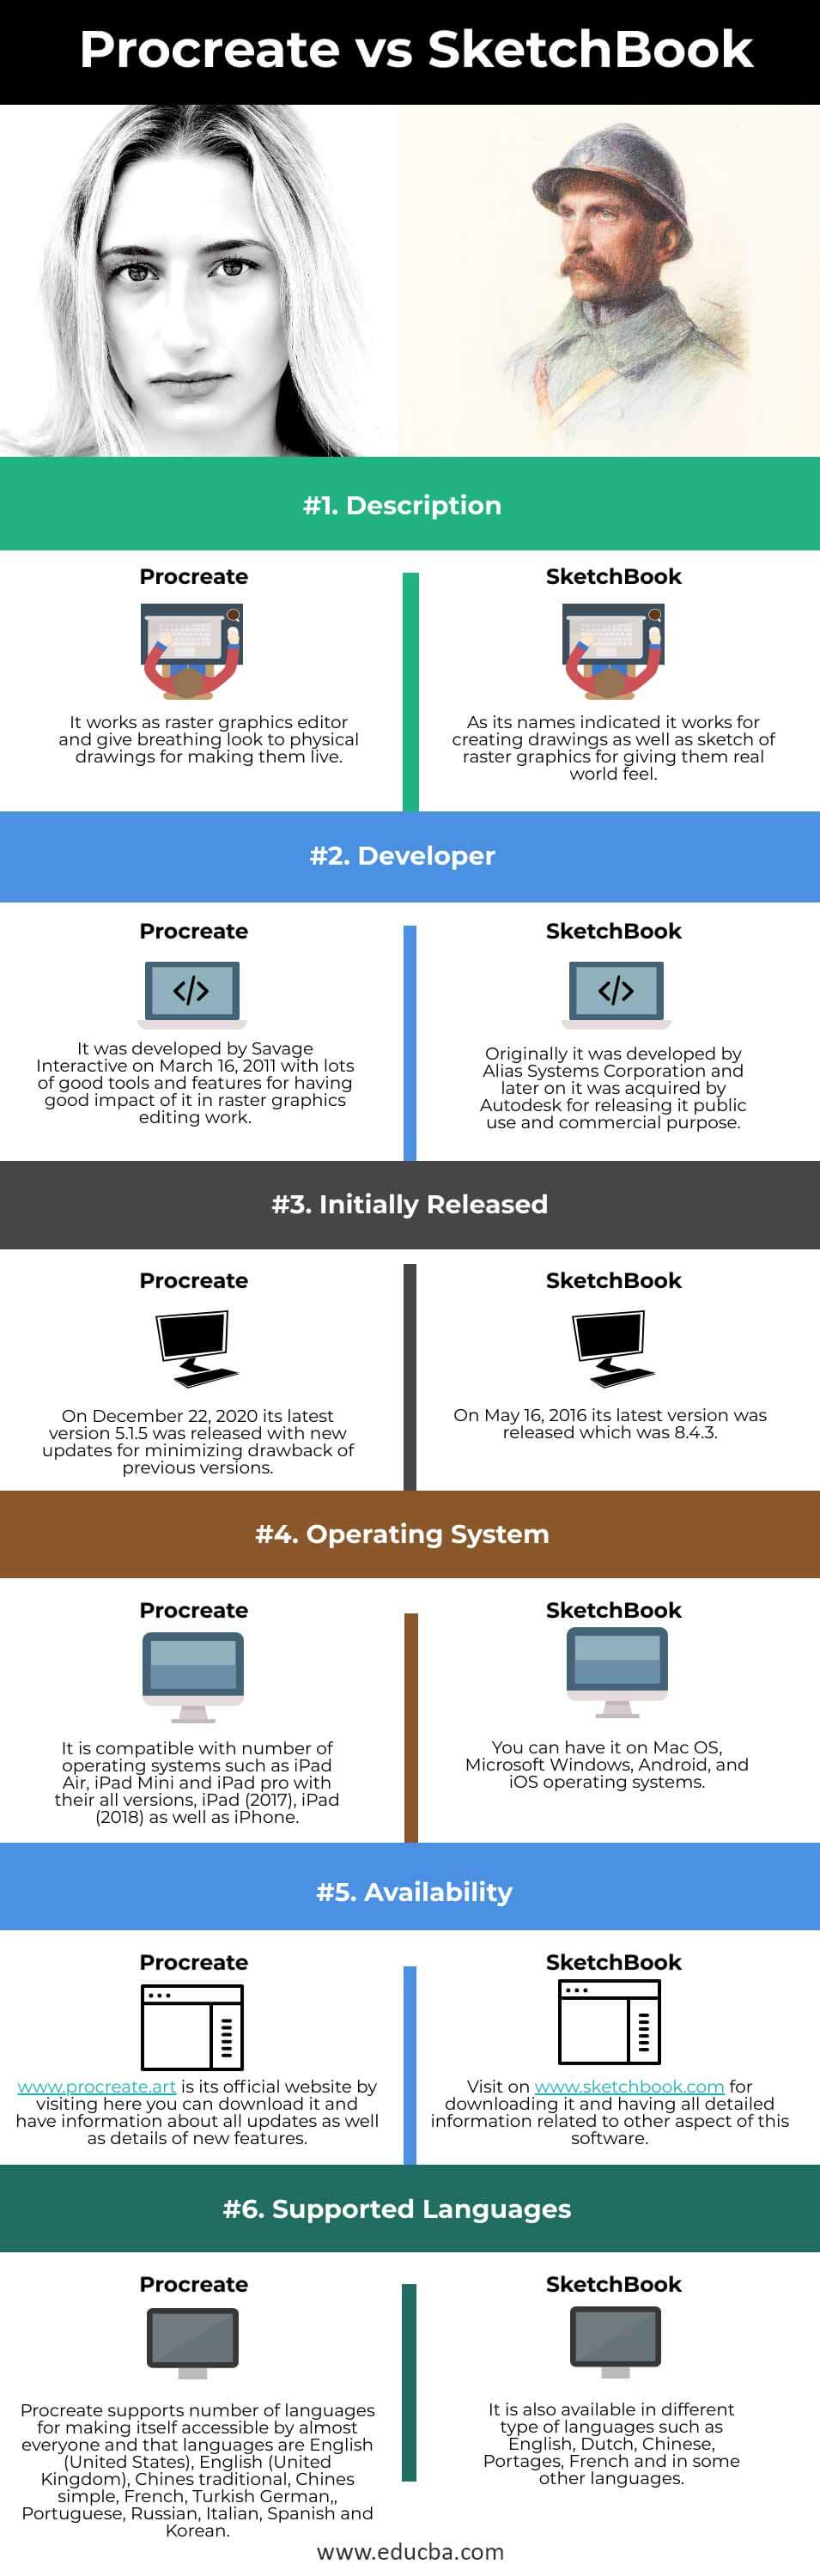 Procreate-vs-SketchBook-info